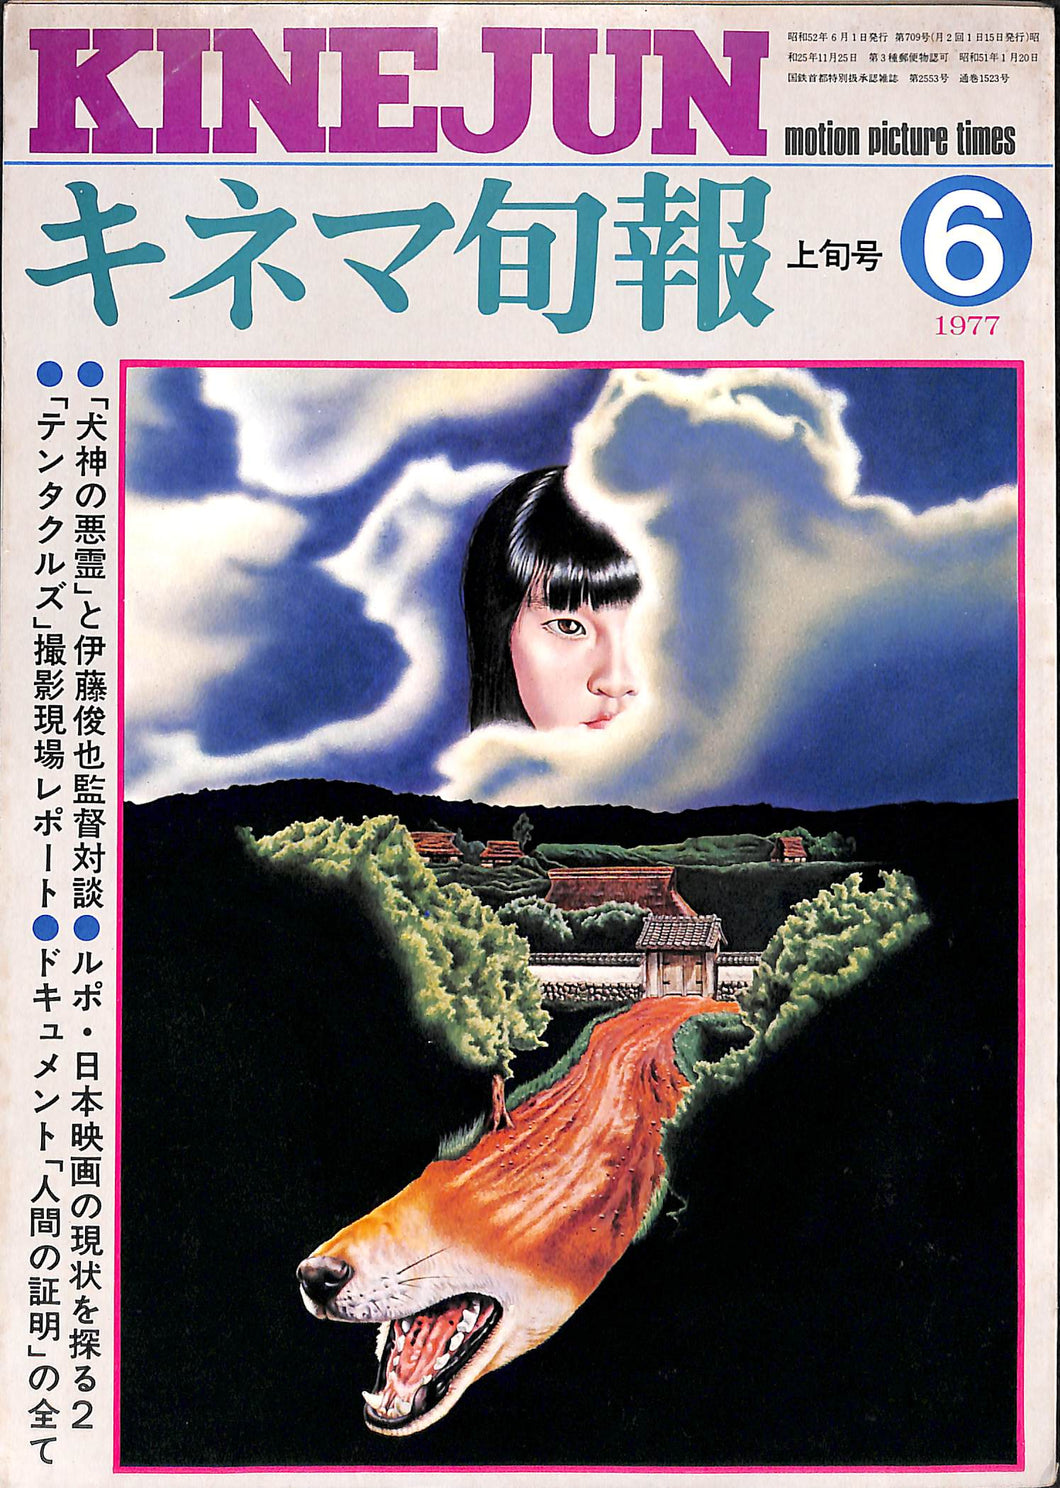 キネマ旬報 1977年6月 上旬号 表紙:犬神の悪霊 / 伊藤俊也監督